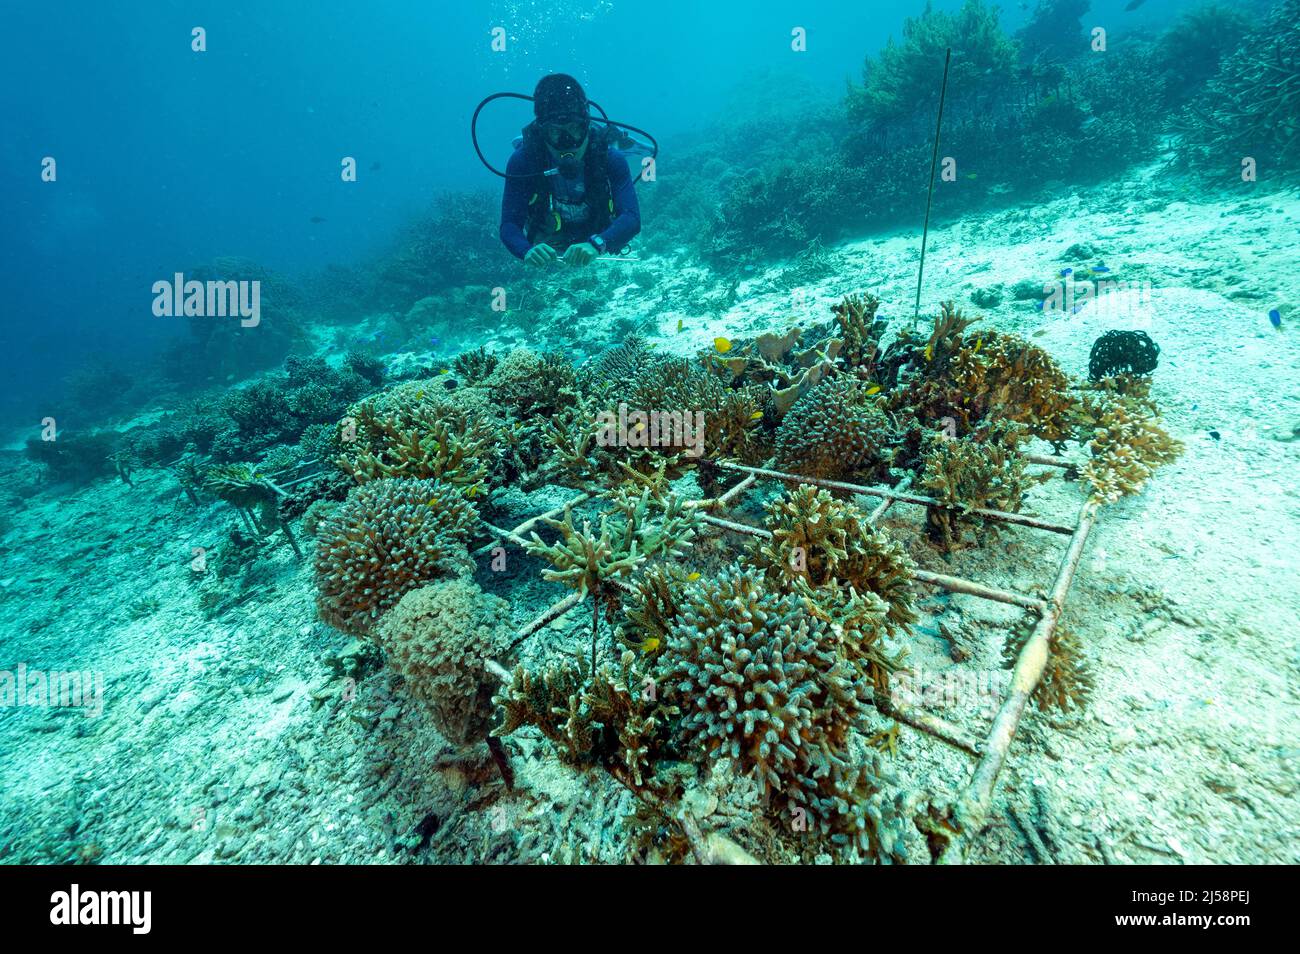 Coral Gartenarbeit Projekt Raja Ampat Indonesien. Stockfoto